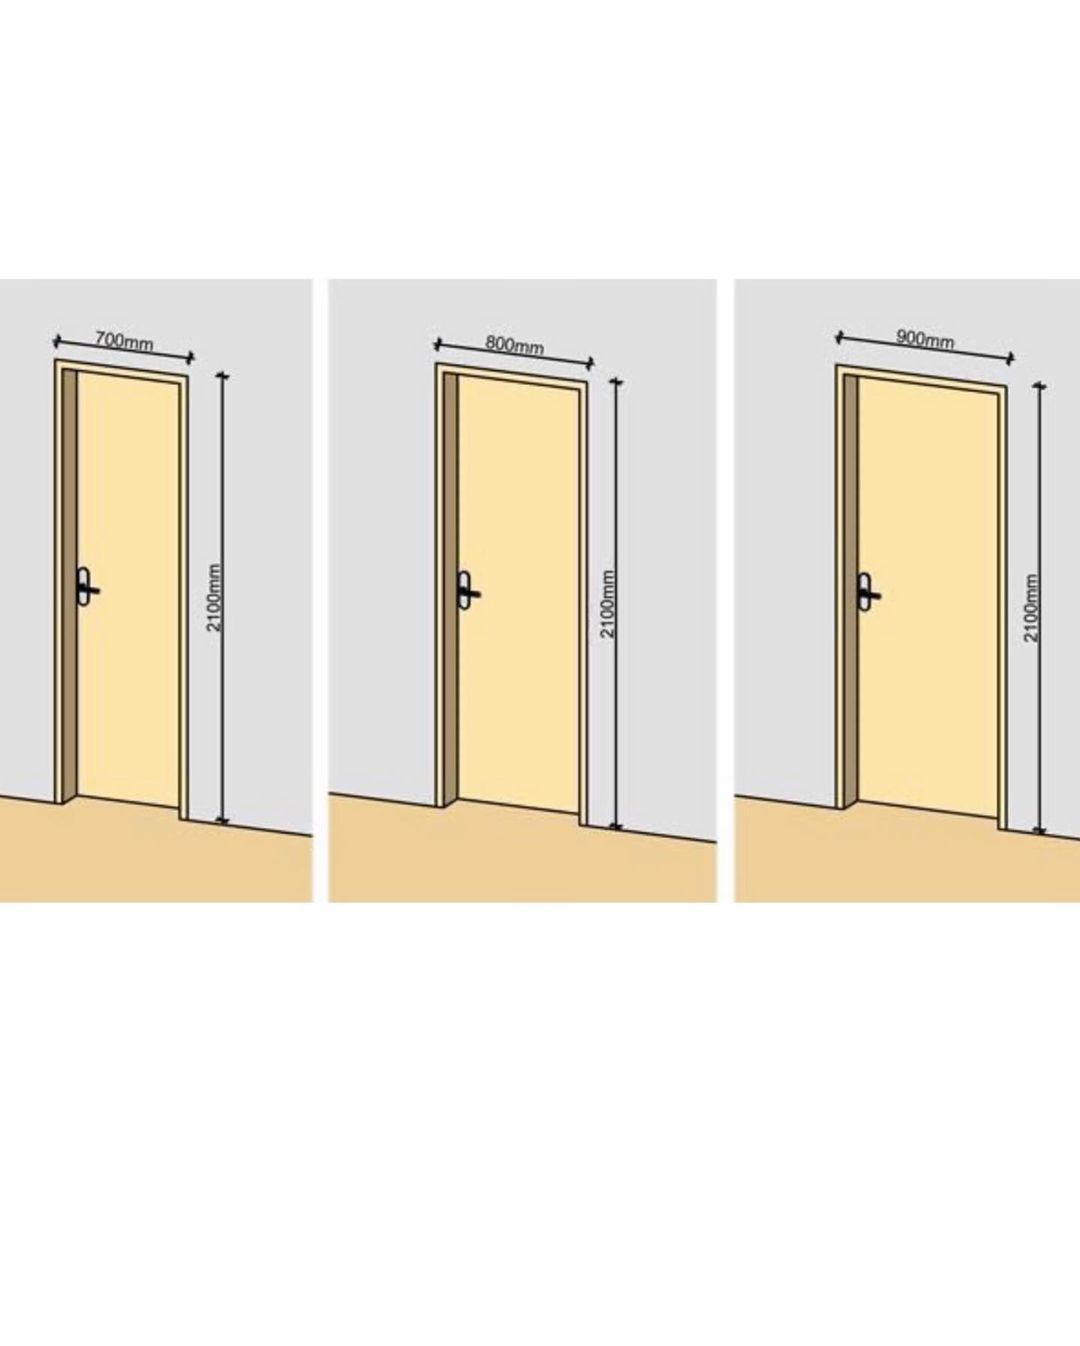 Стандартный размер двери квартиры. Высота проема межкомнатной двери стандарт. Стандартный размер полотна межкомнатной двери. Ширина дверного проема межкомнатной двери стандарт. Высота дверного проема межкомнатной двери стандарт.